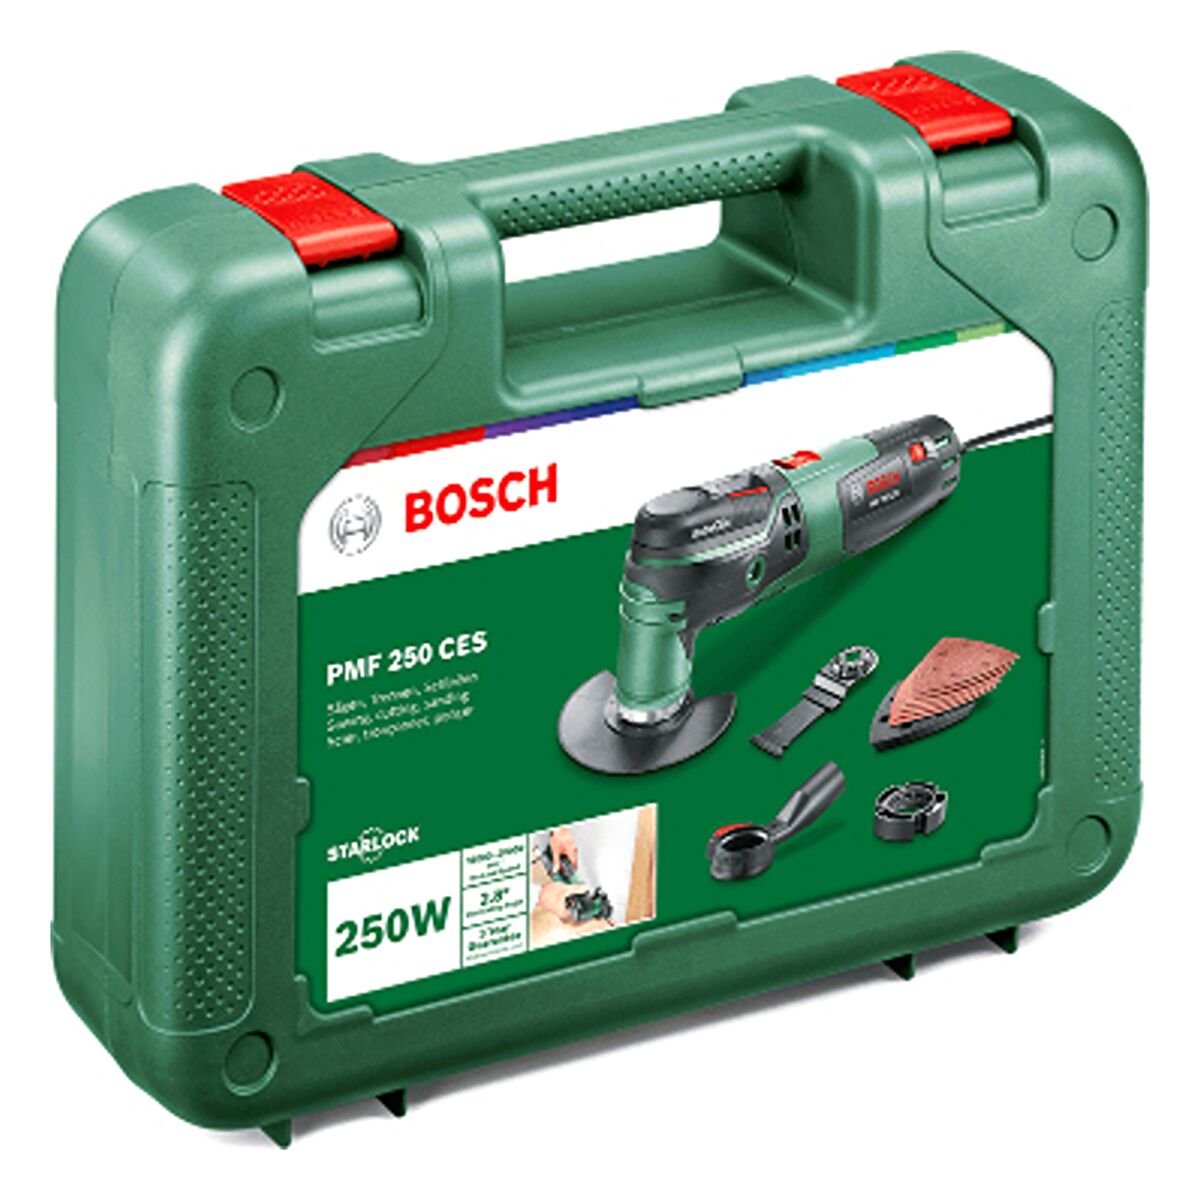 Bosch PMF 250 CES Starlock Multi Tool